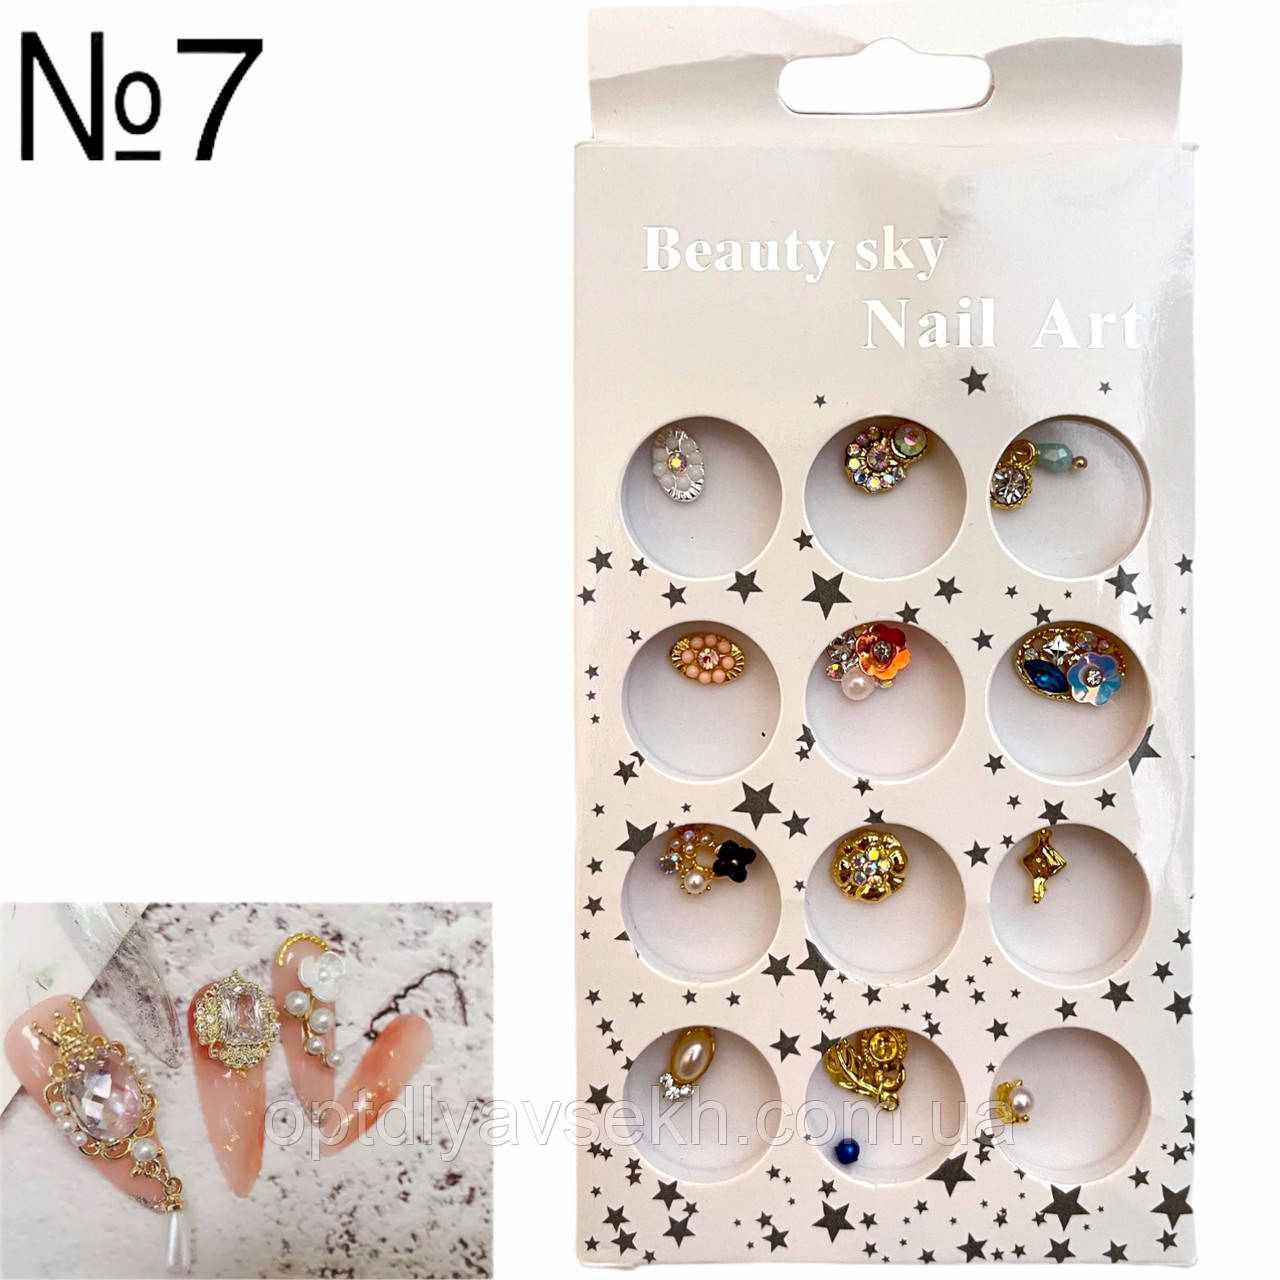 Набір декор-прикраси для дизайну нігтів Beauty Sky Nail Art, 12 шт./уп. №7